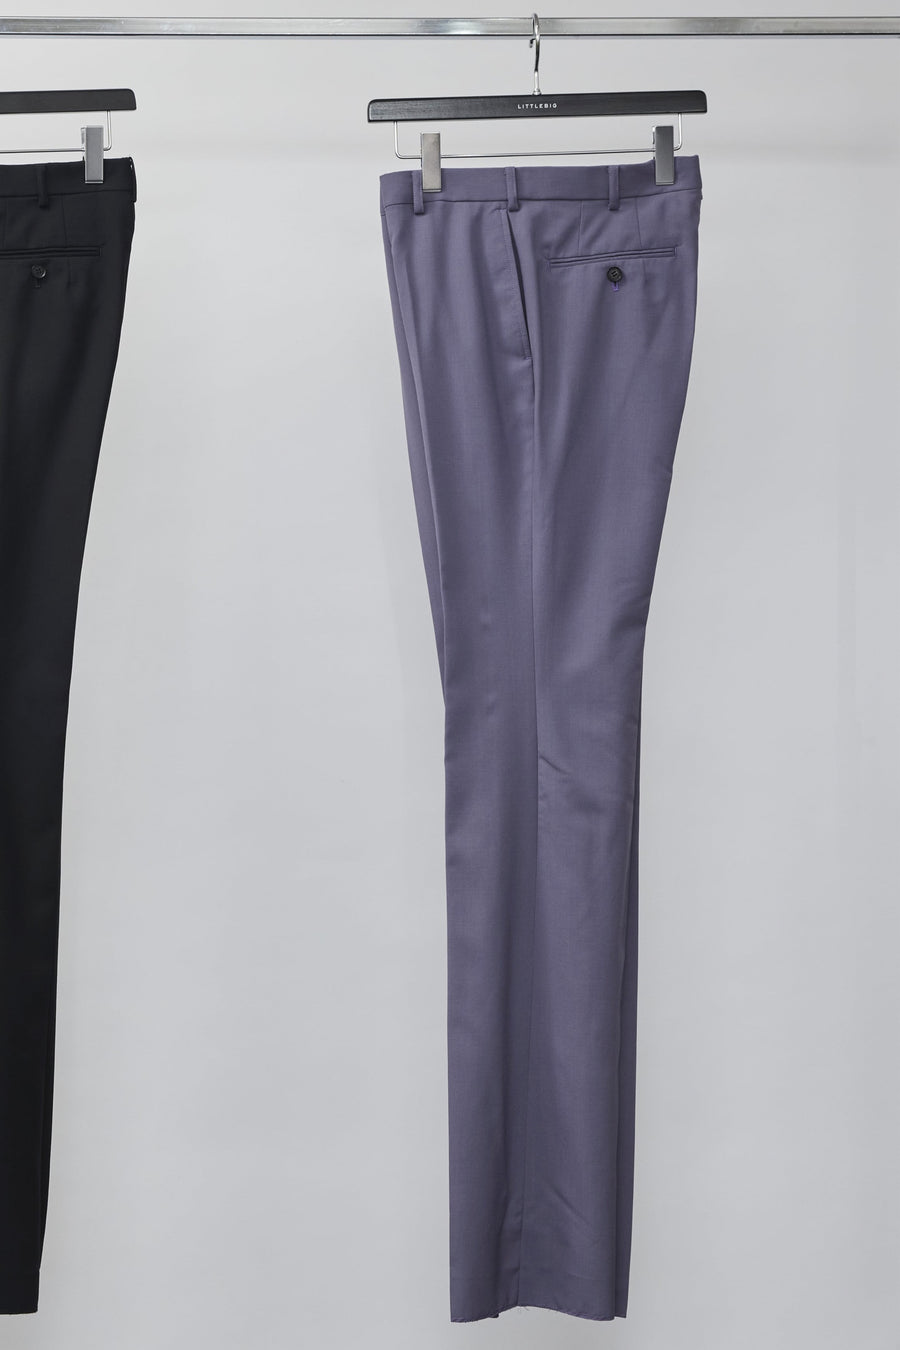 LITTLEBIG  Slim Flare Trousers（Purple）